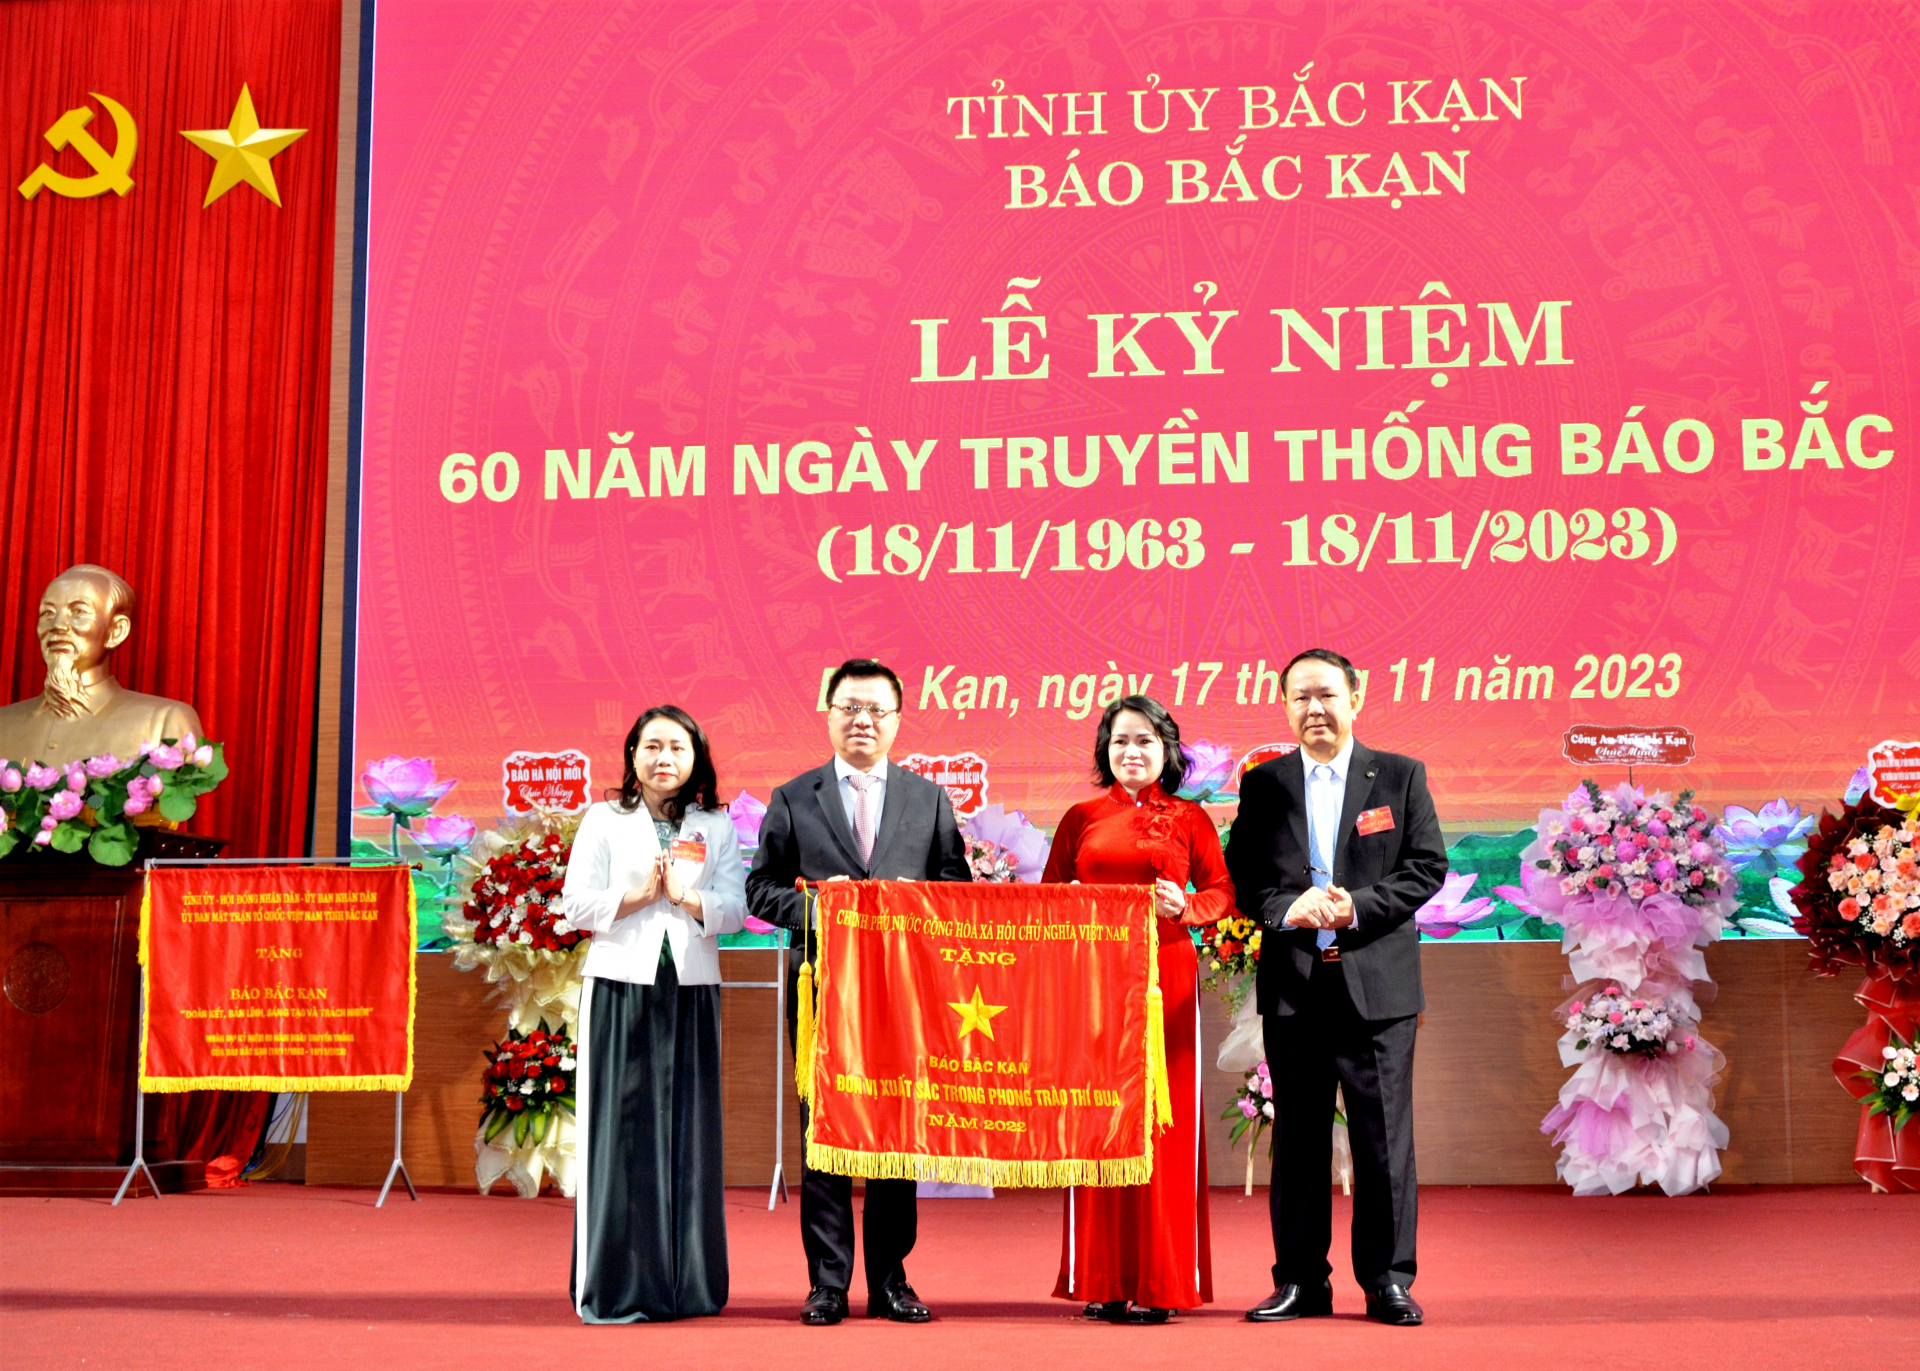 Đồng chí Lê Quốc Minh, Tổng Biên tập Báo Nhân dân trao Cờ thi đua của Chính phủ tặng Báo Bắc Kạn